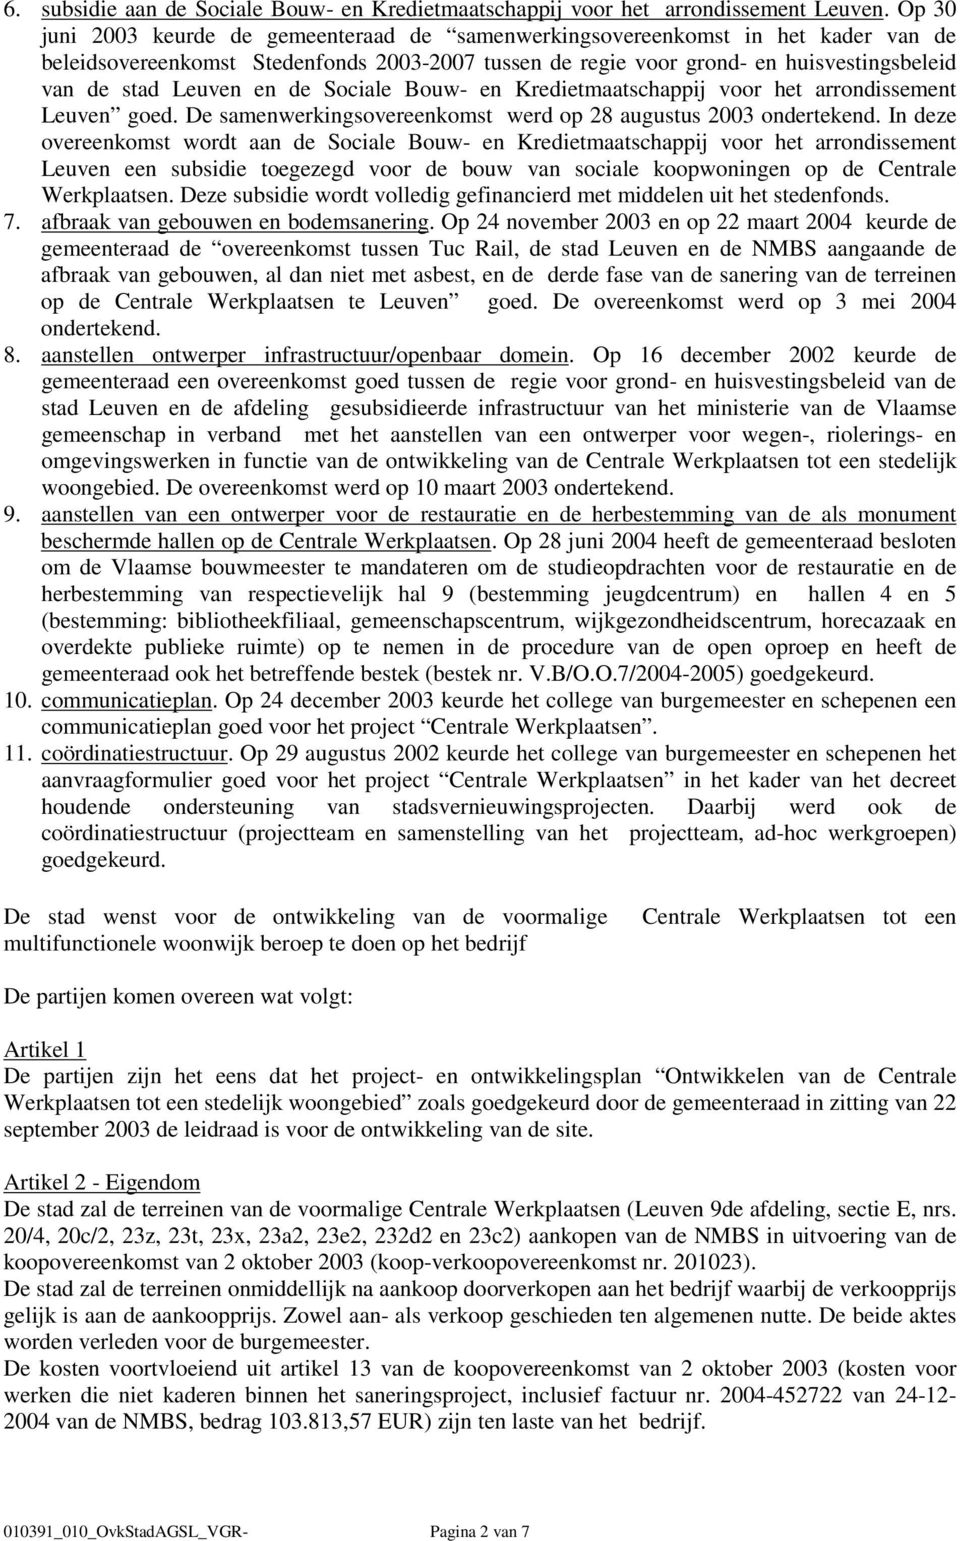 en de Sociale Bouw- en Kredietmaatschappij voor het arrondissement Leuven goed. De samenwerkingsovereenkomst werd op 28 augustus 2003 ondertekend.